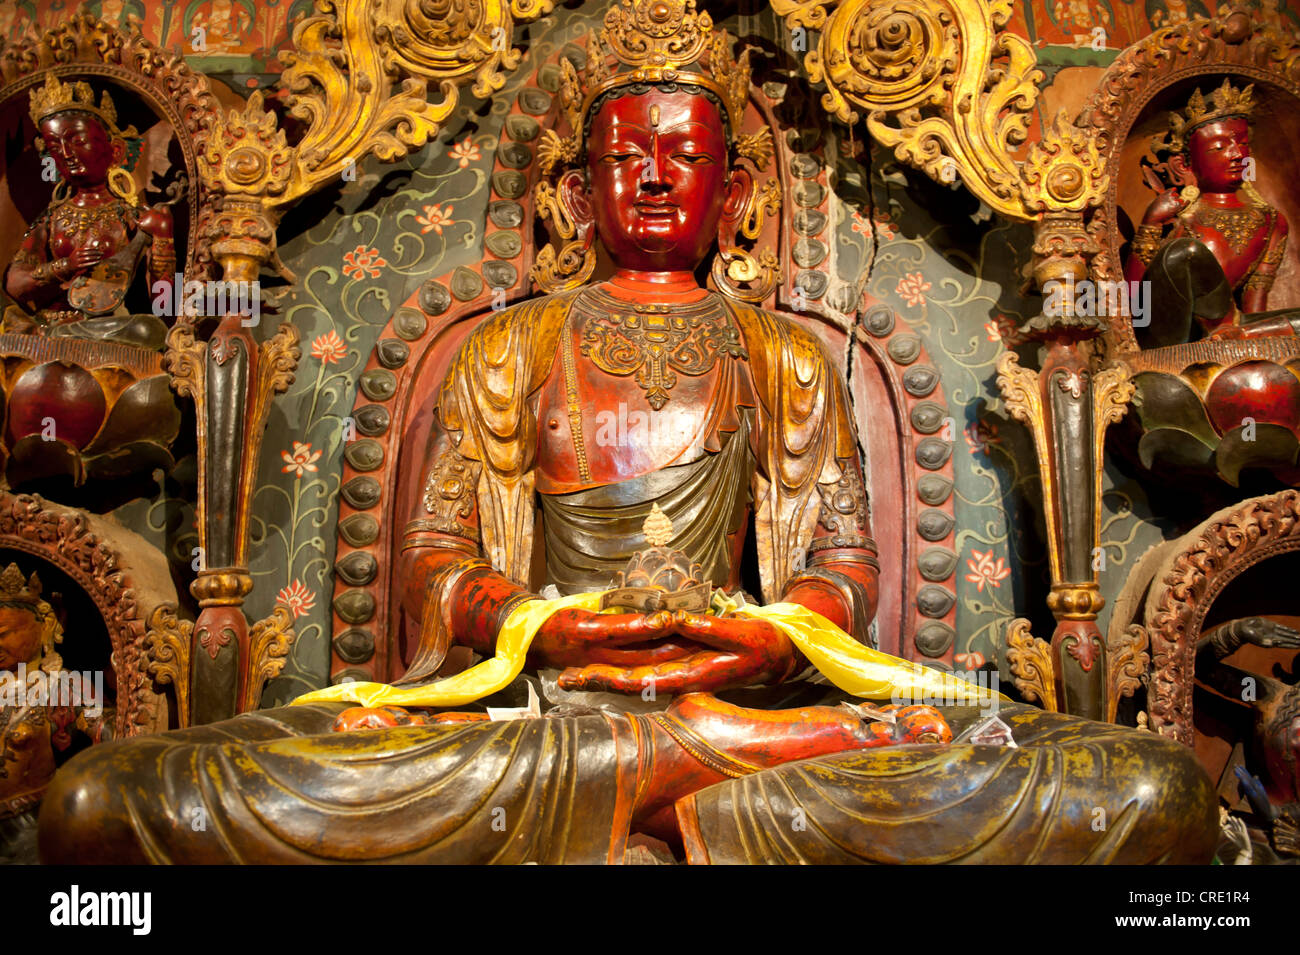 Le bouddhisme tibétain, de style Newari sculptures, statues peintes de couleurs vives fait de bois et d'argile rouge, statue de Bouddha, Palcho Banque D'Images